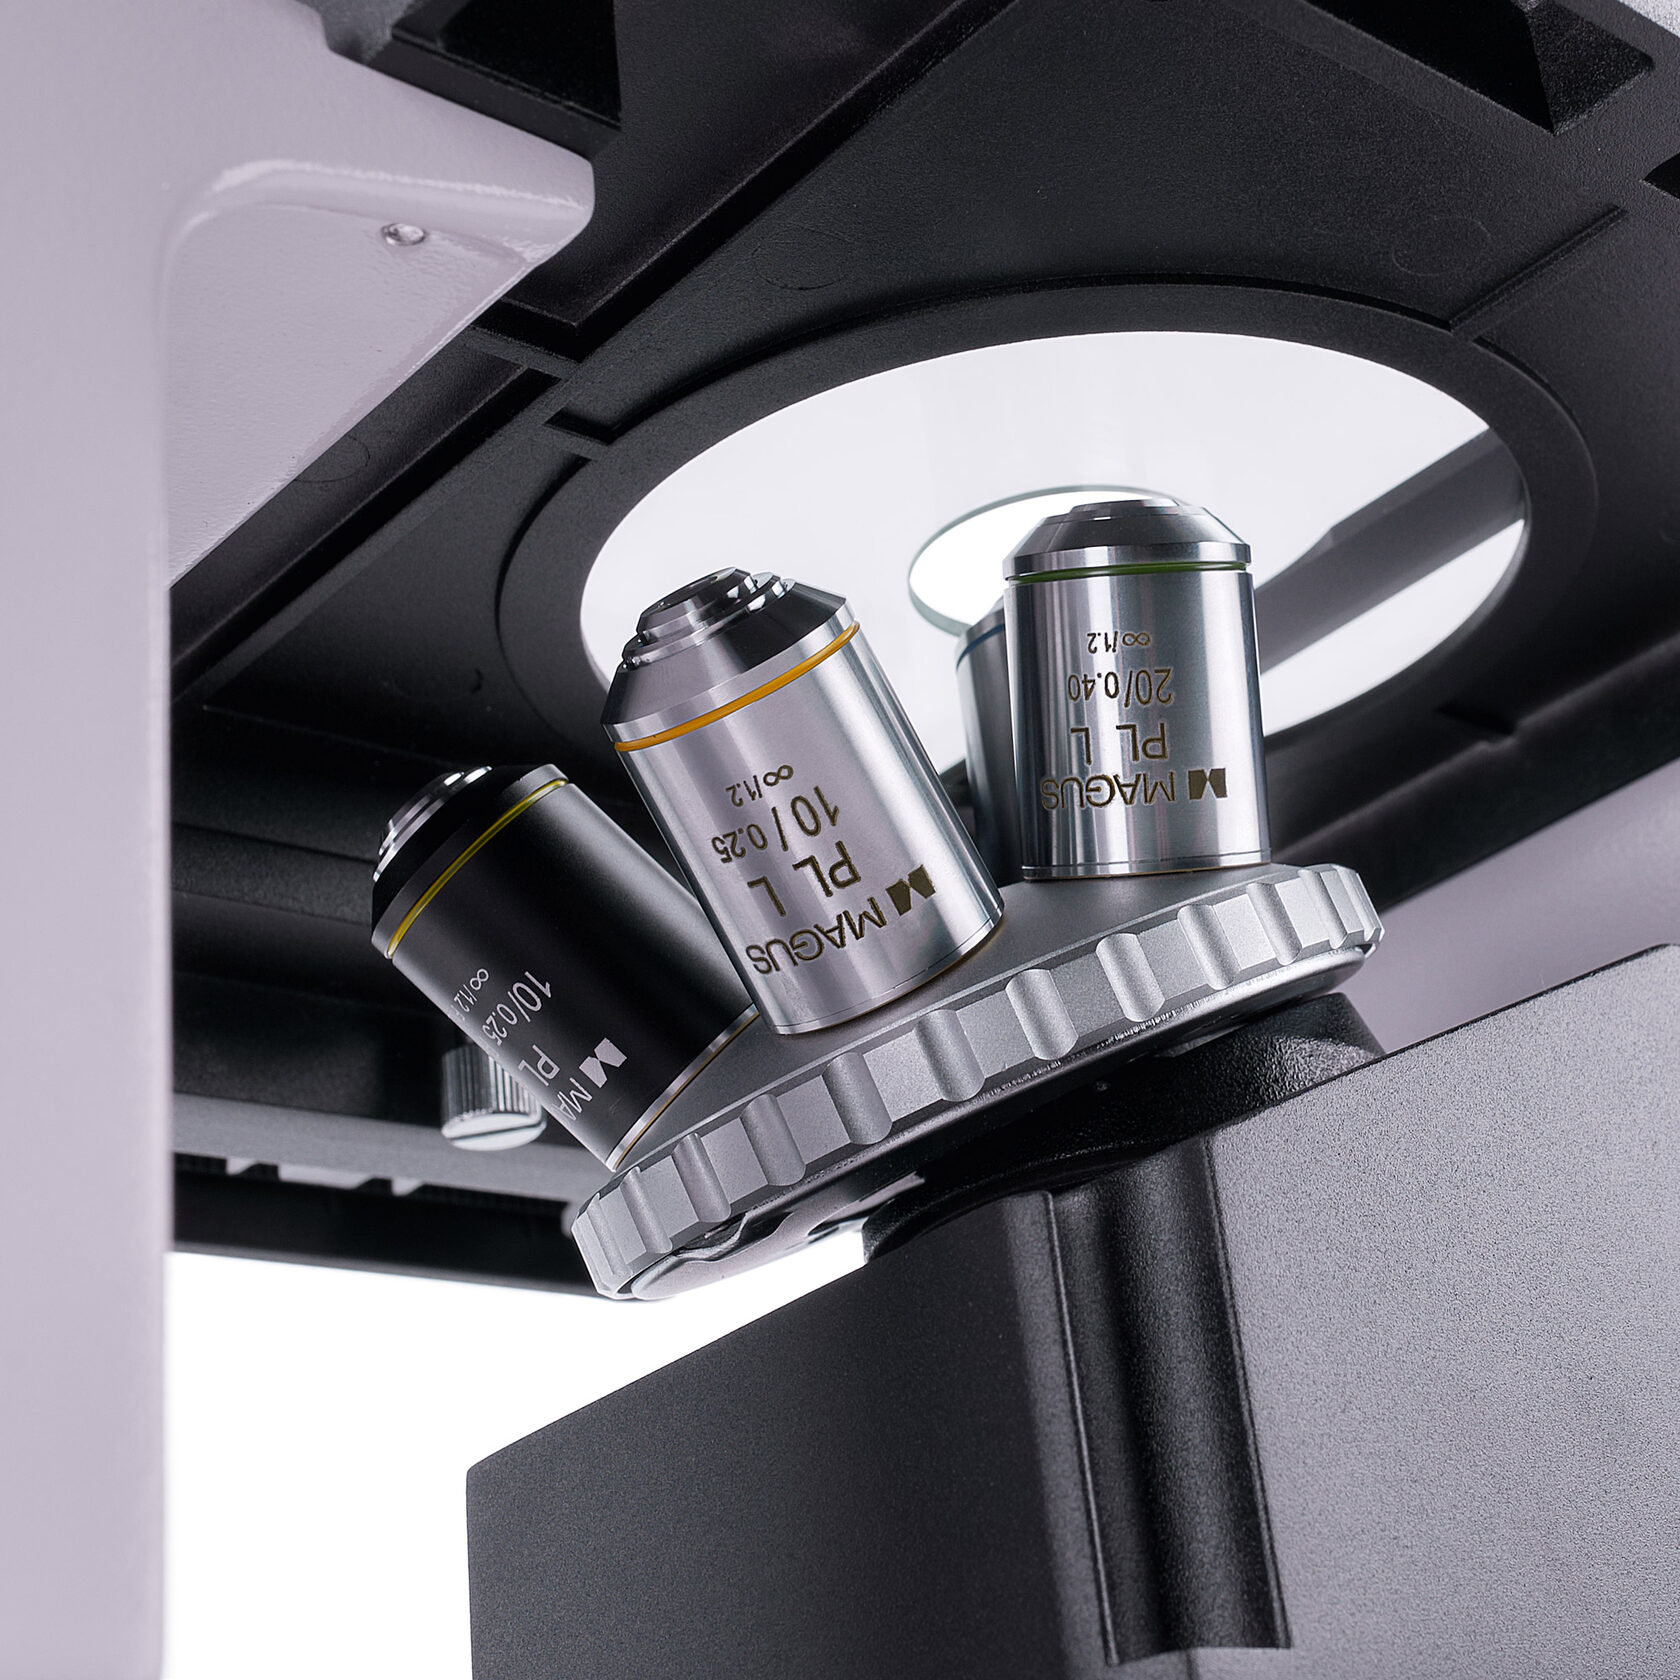 Световой микроскоп MAGUS Bio V350